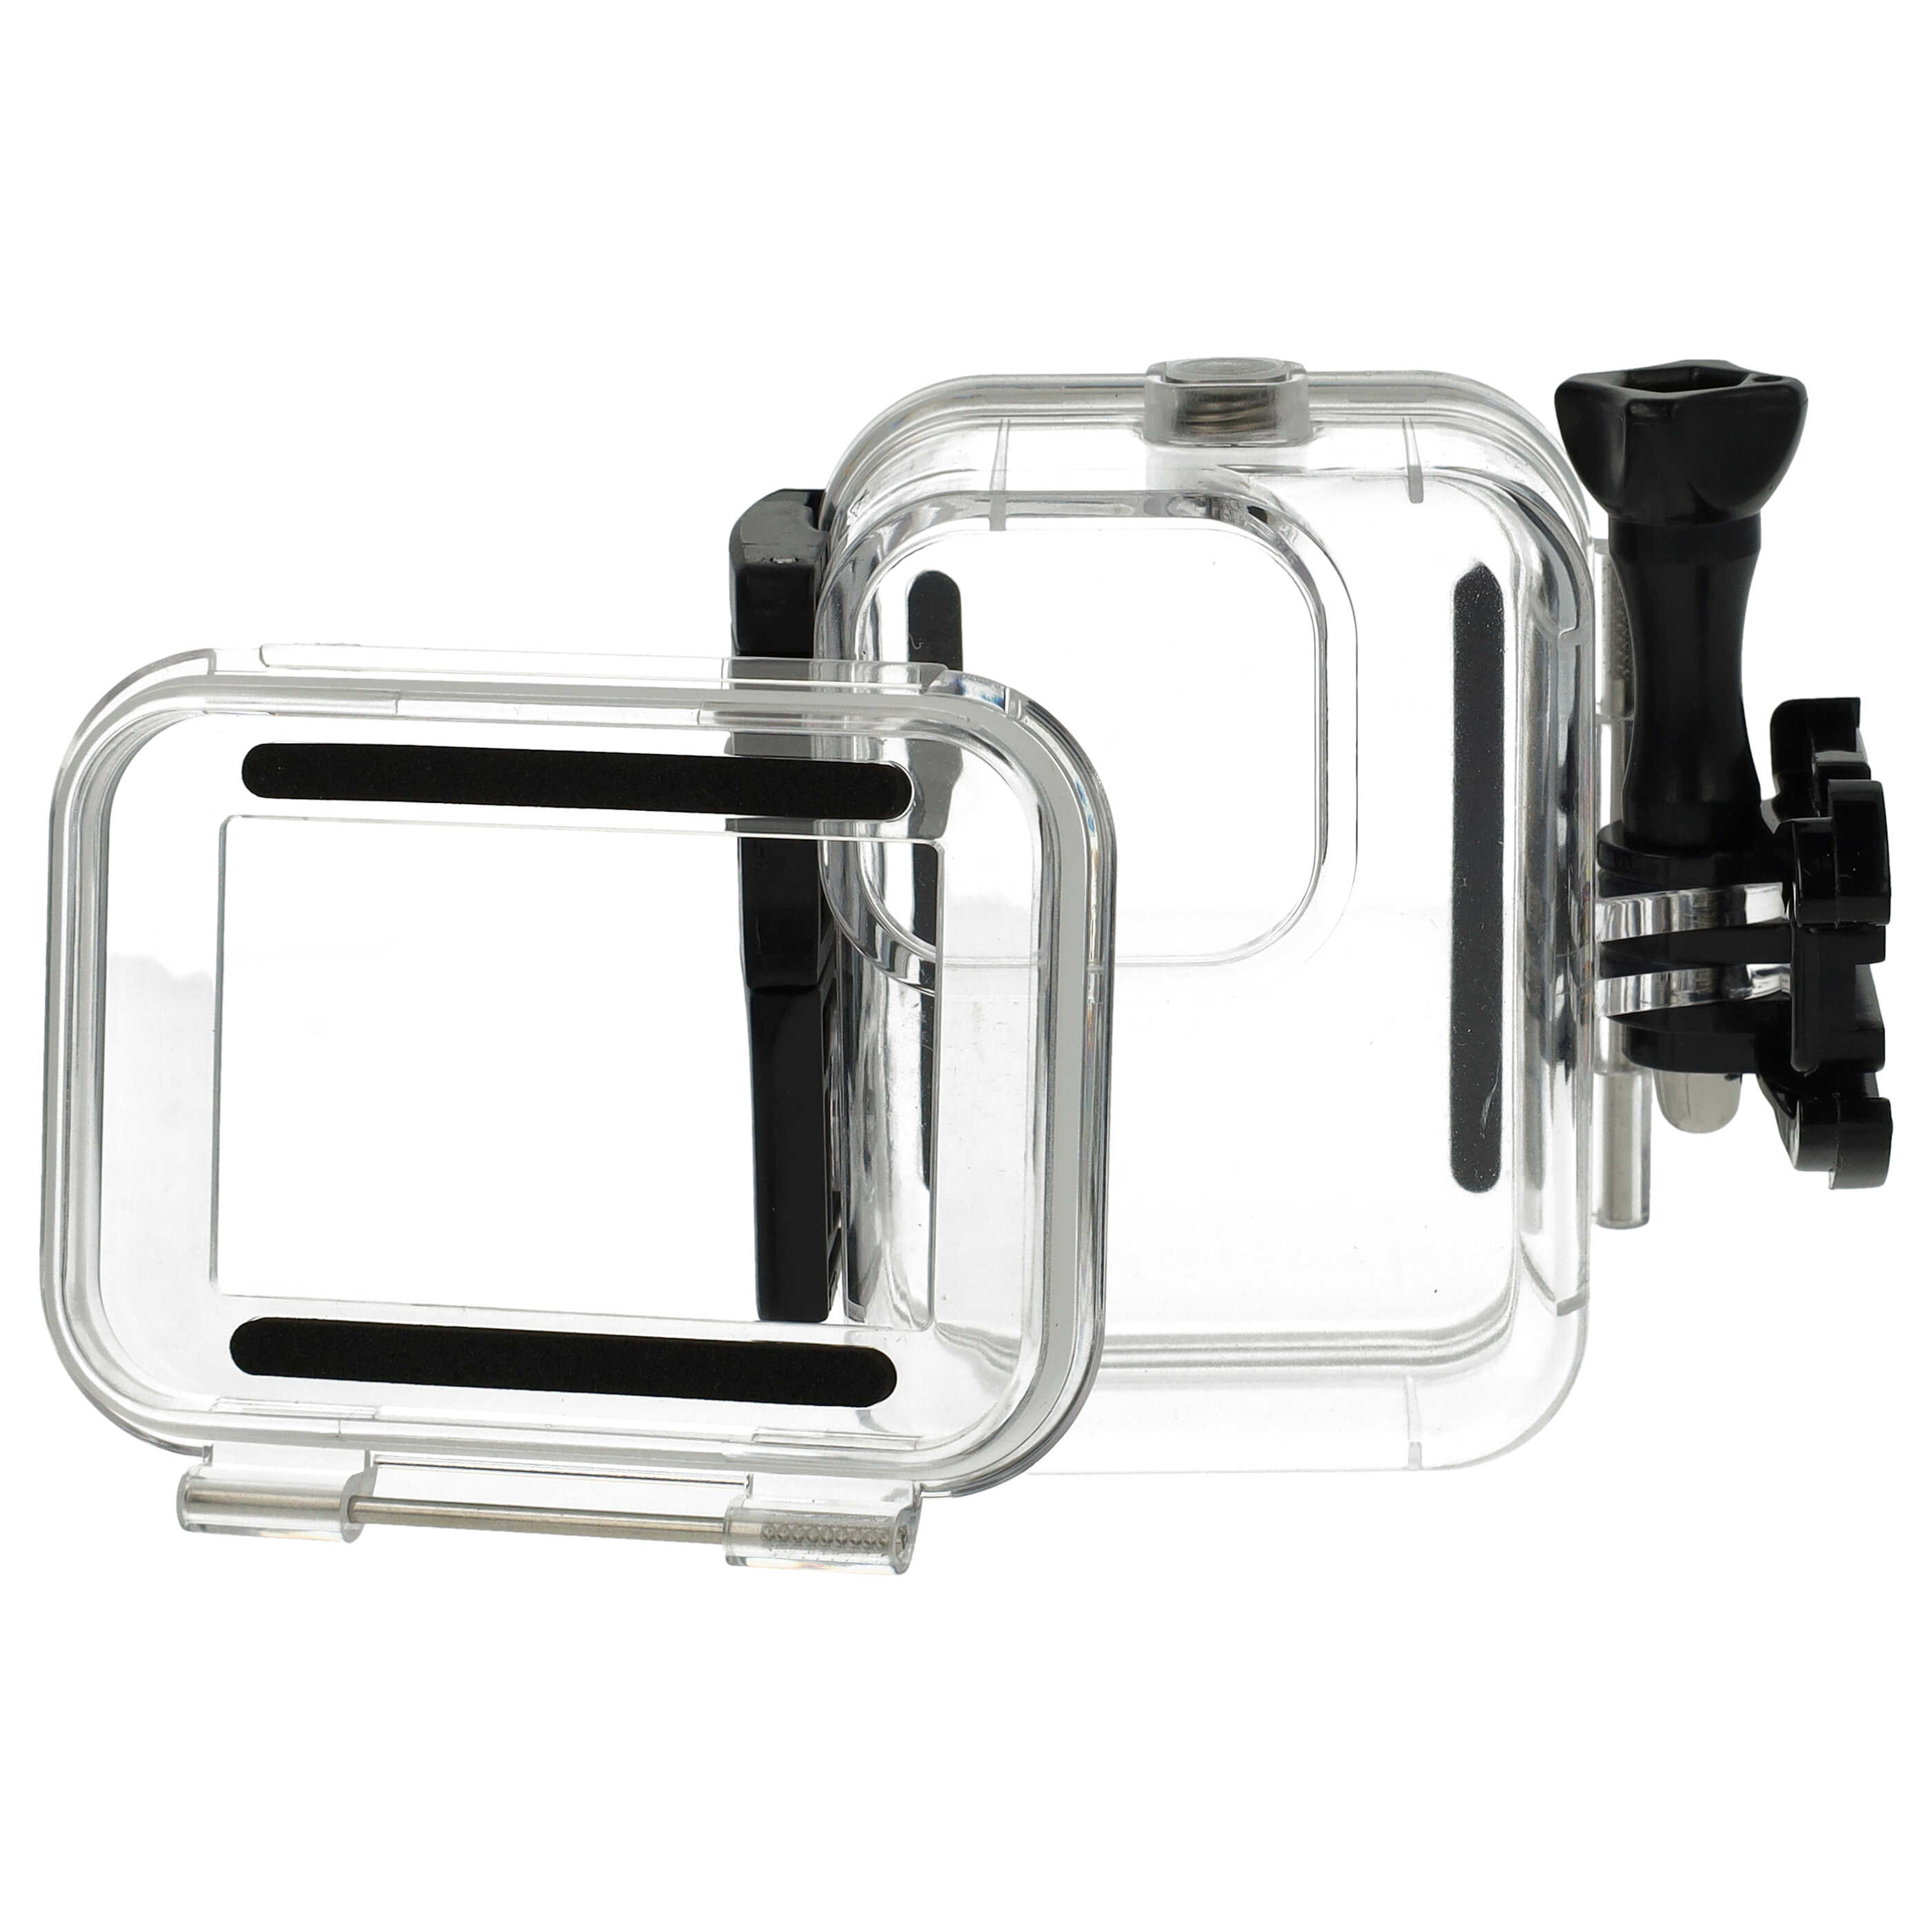 Boîtier étanche pour action cam GoPro Hero 9, 10, 11 - profondeur max. 60 m